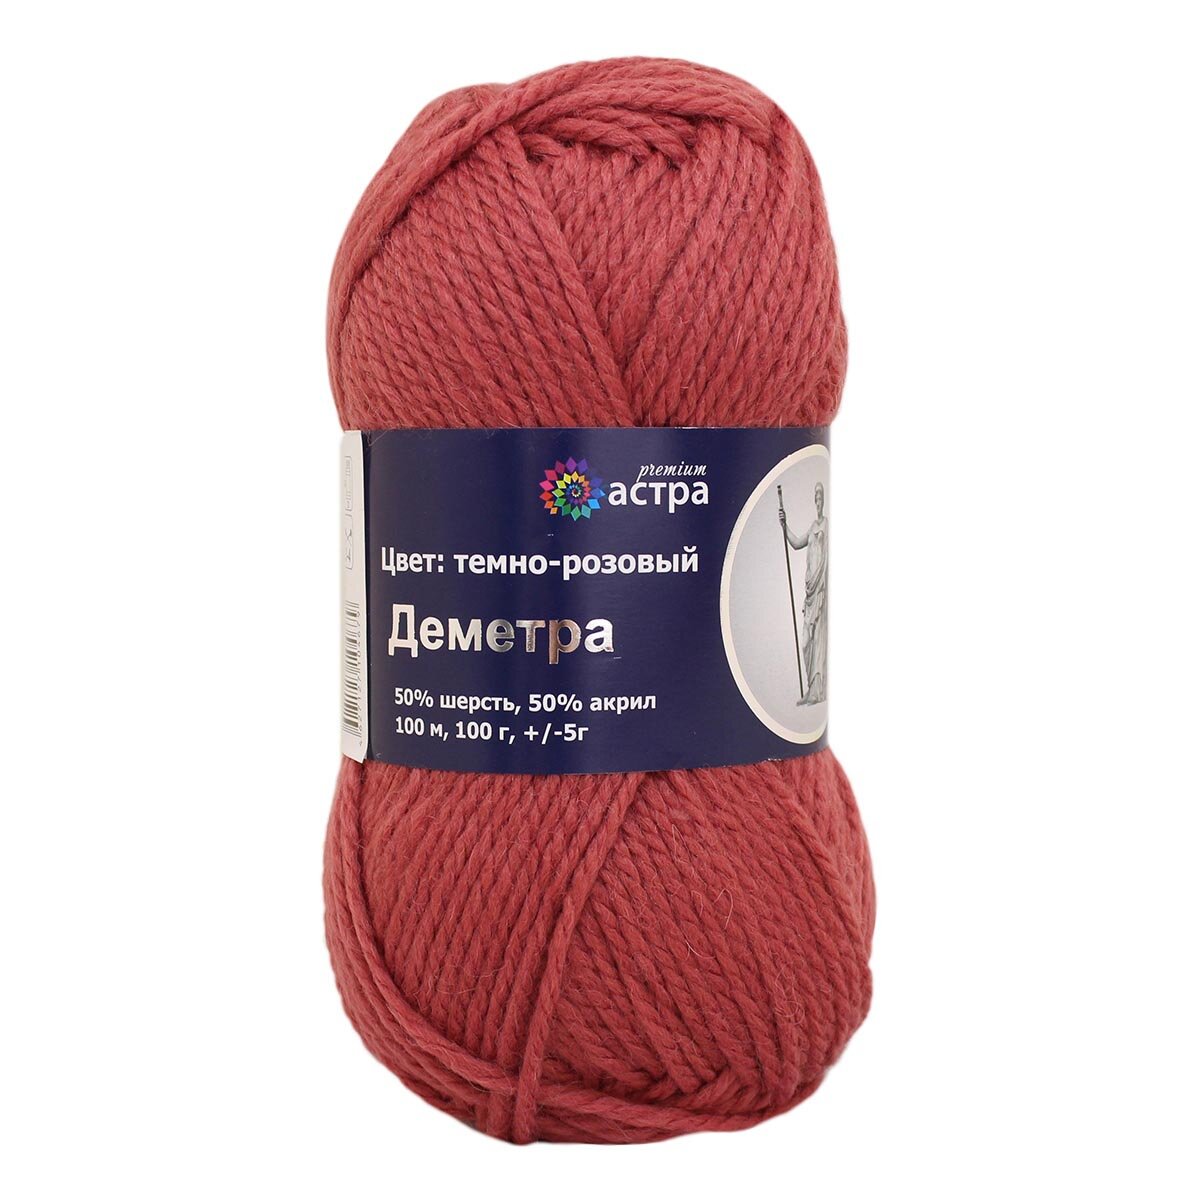 Пряжа для вязания Astra Premium 'Деметра', 100 г, 100 м (50% шерсть, 50% акрил) (13 темно-розовый), 3 мотка